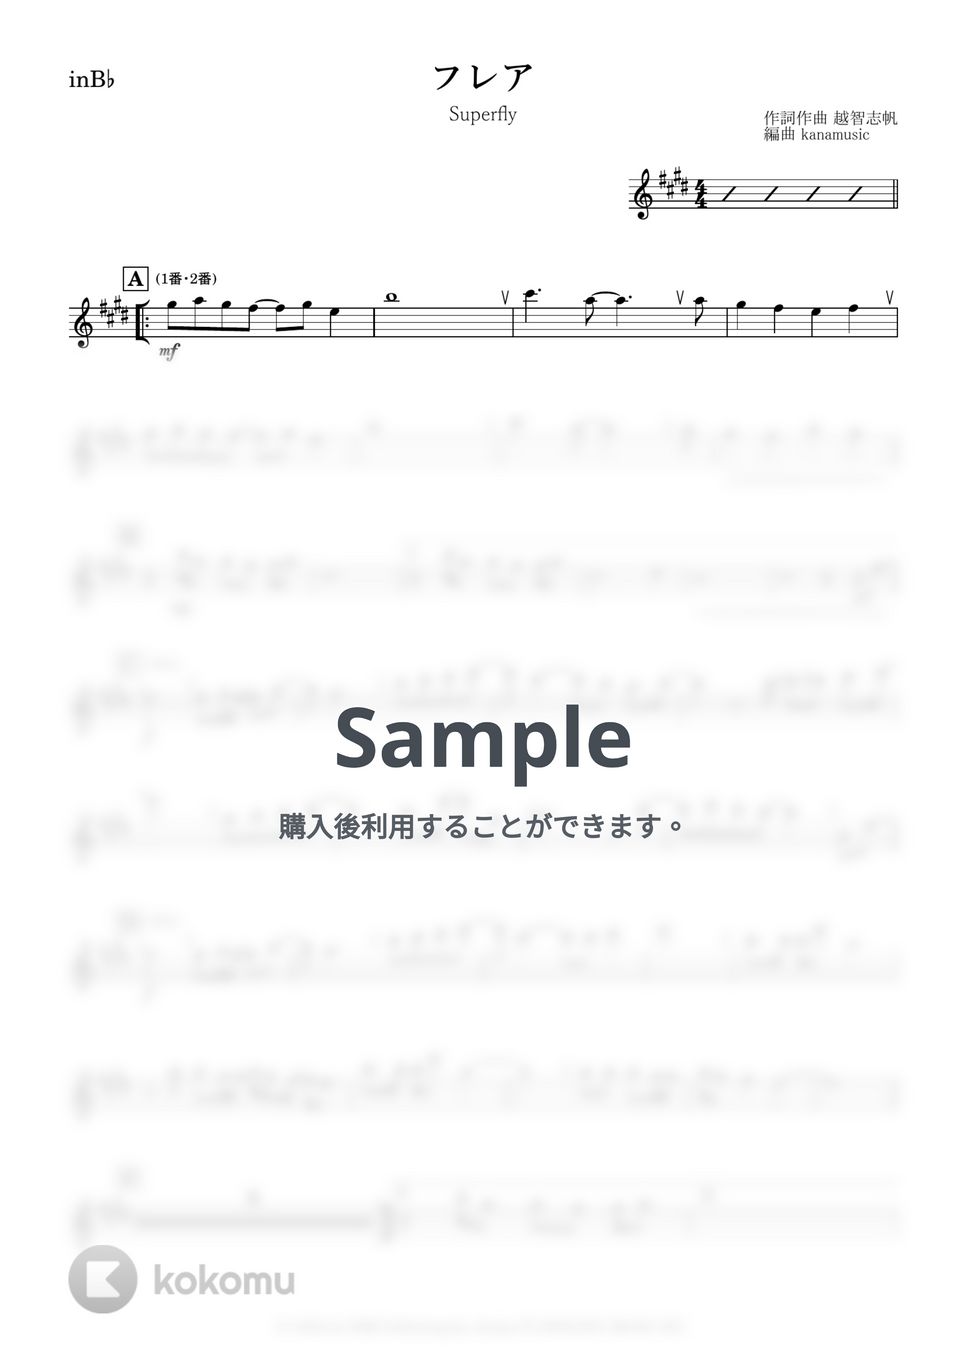 Superfly - フレア (B♭) by kanamusic